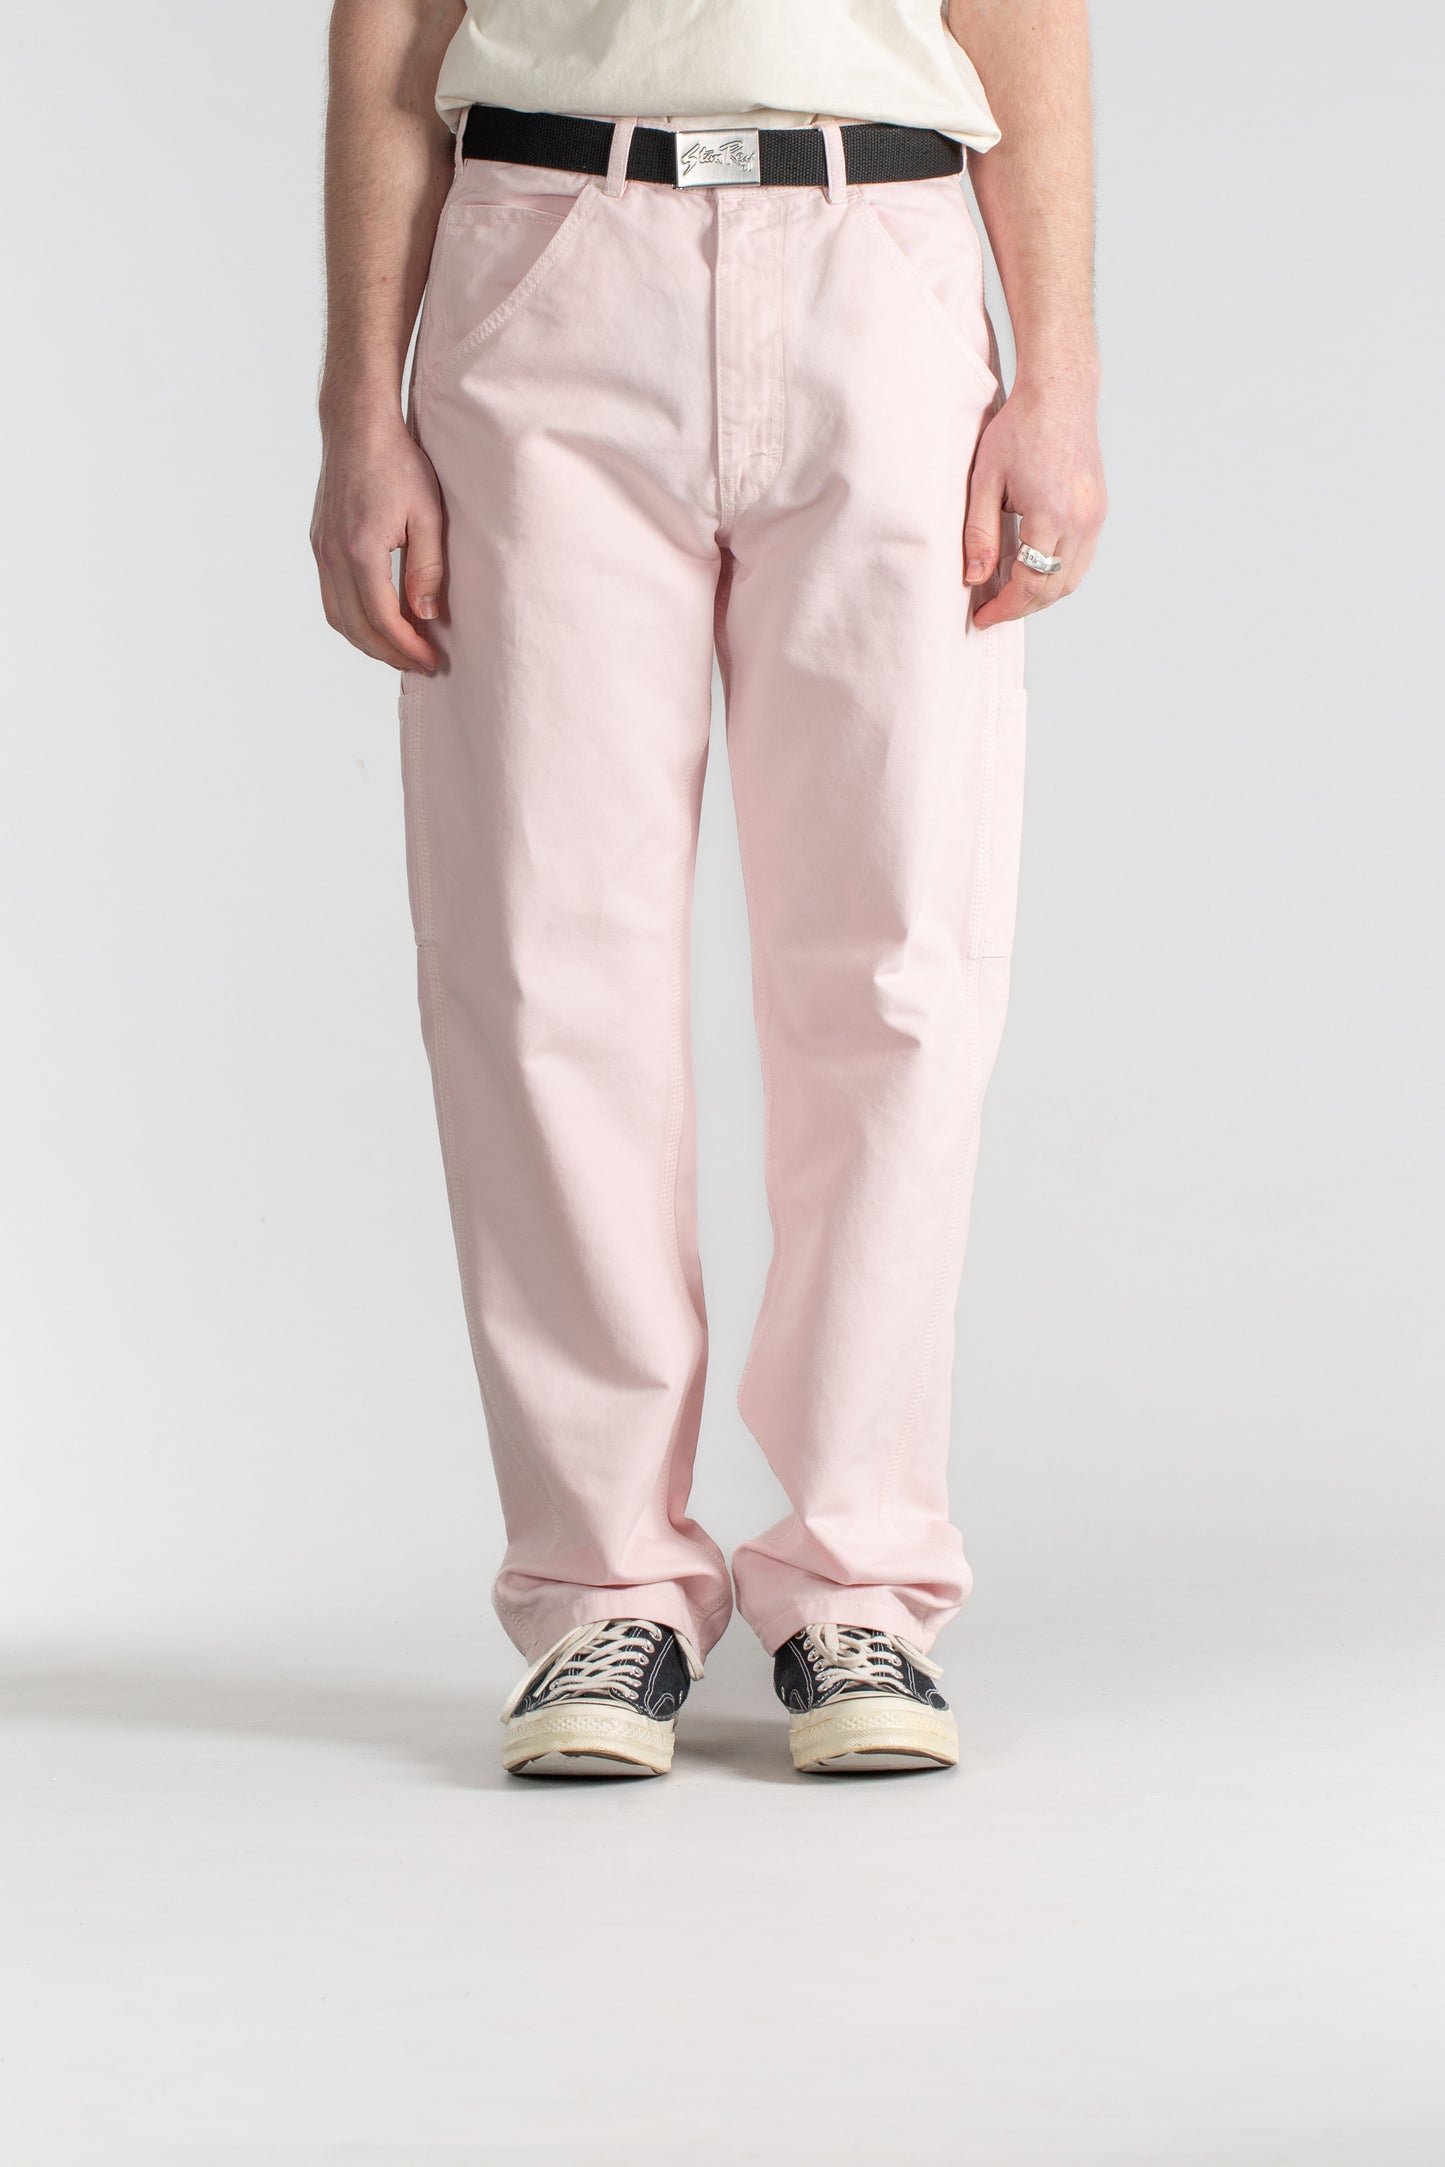 OG Painter Pant (Pink)